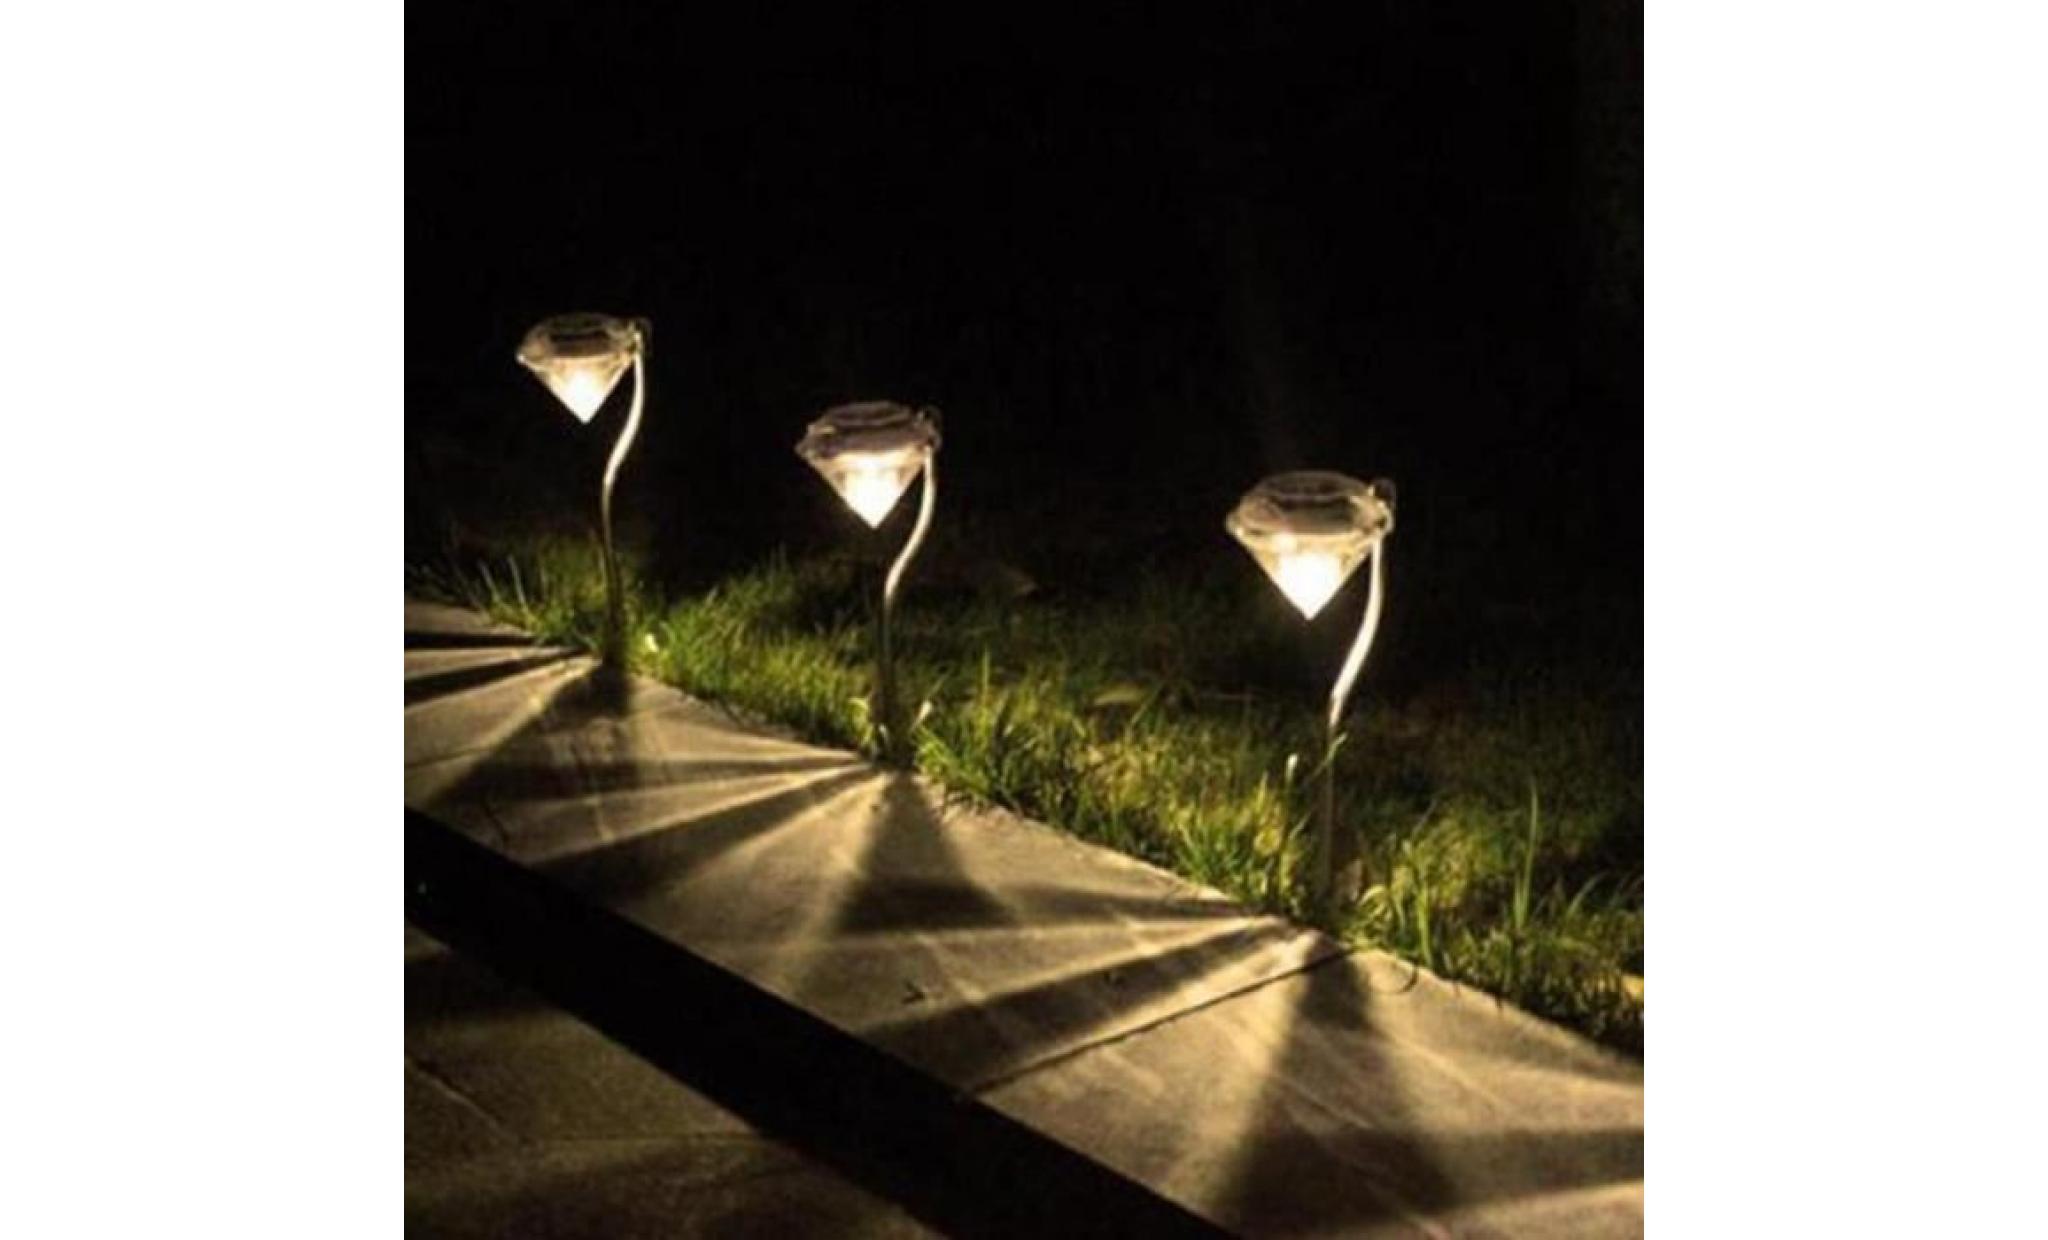 nouveau en plein air led chemin lampe énergie solaire de nuit lumières de fleur lampe maison jardin clôture lumière jardin p